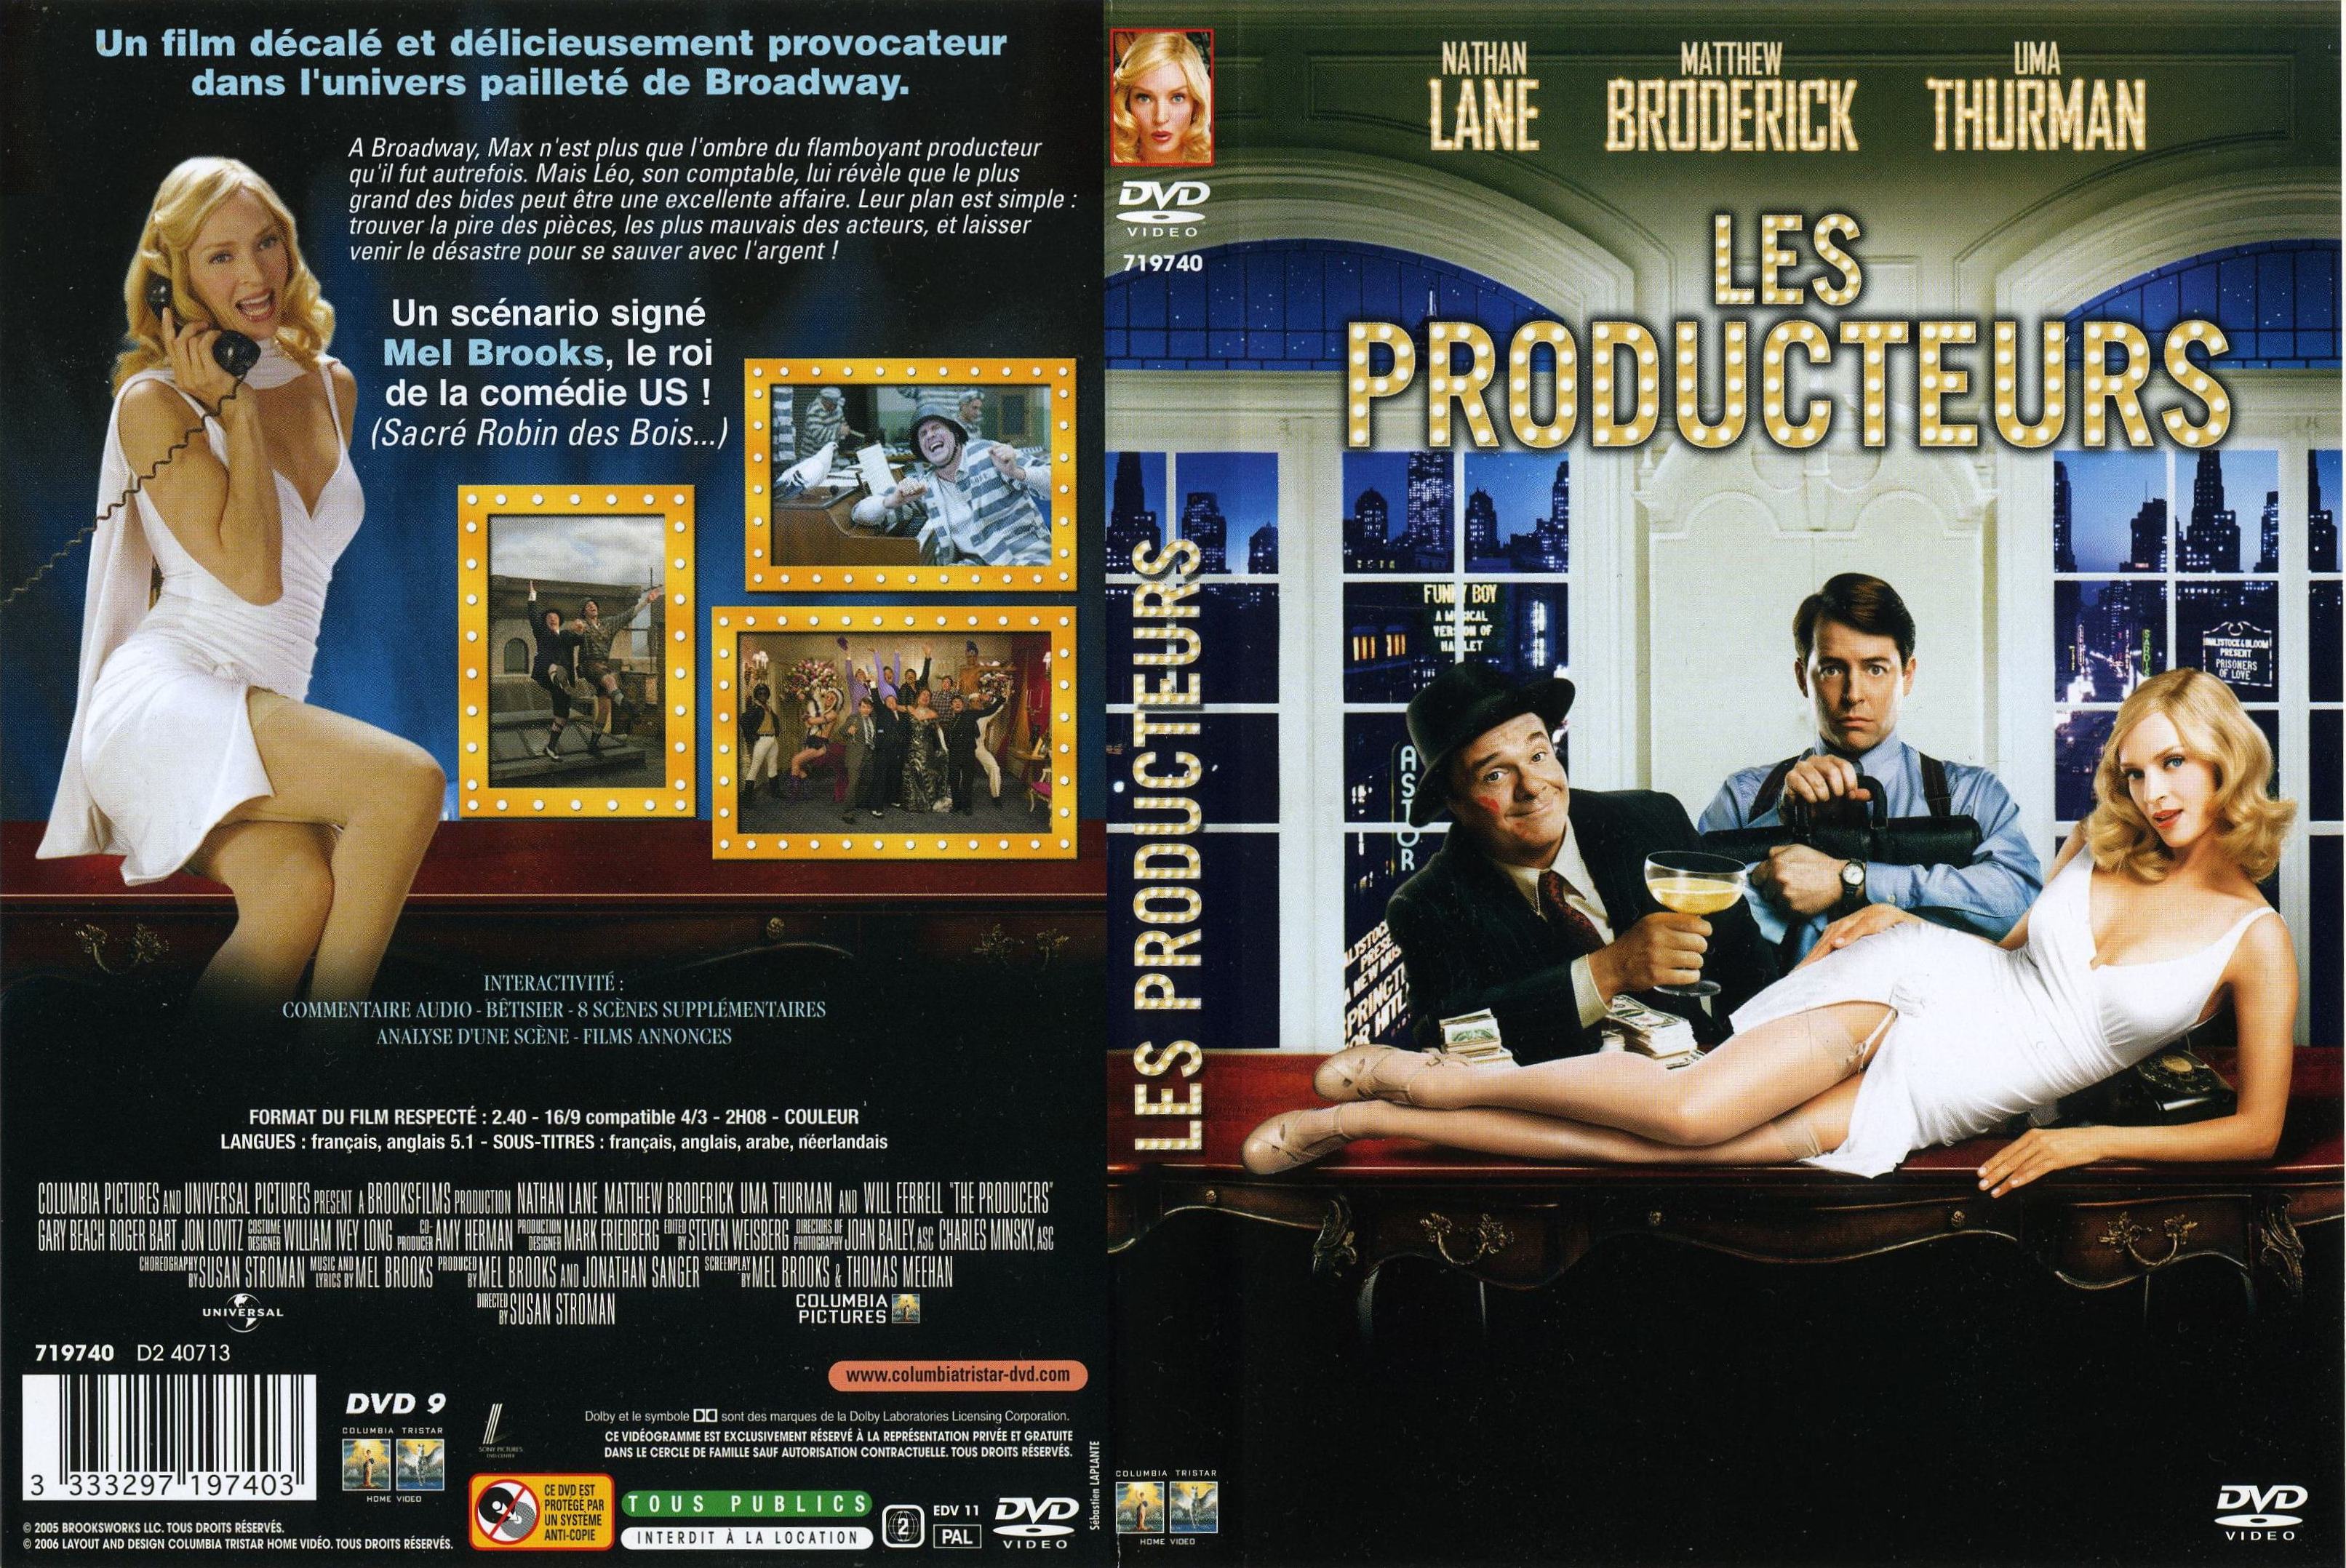 Jaquette DVD Les Producteurs v2